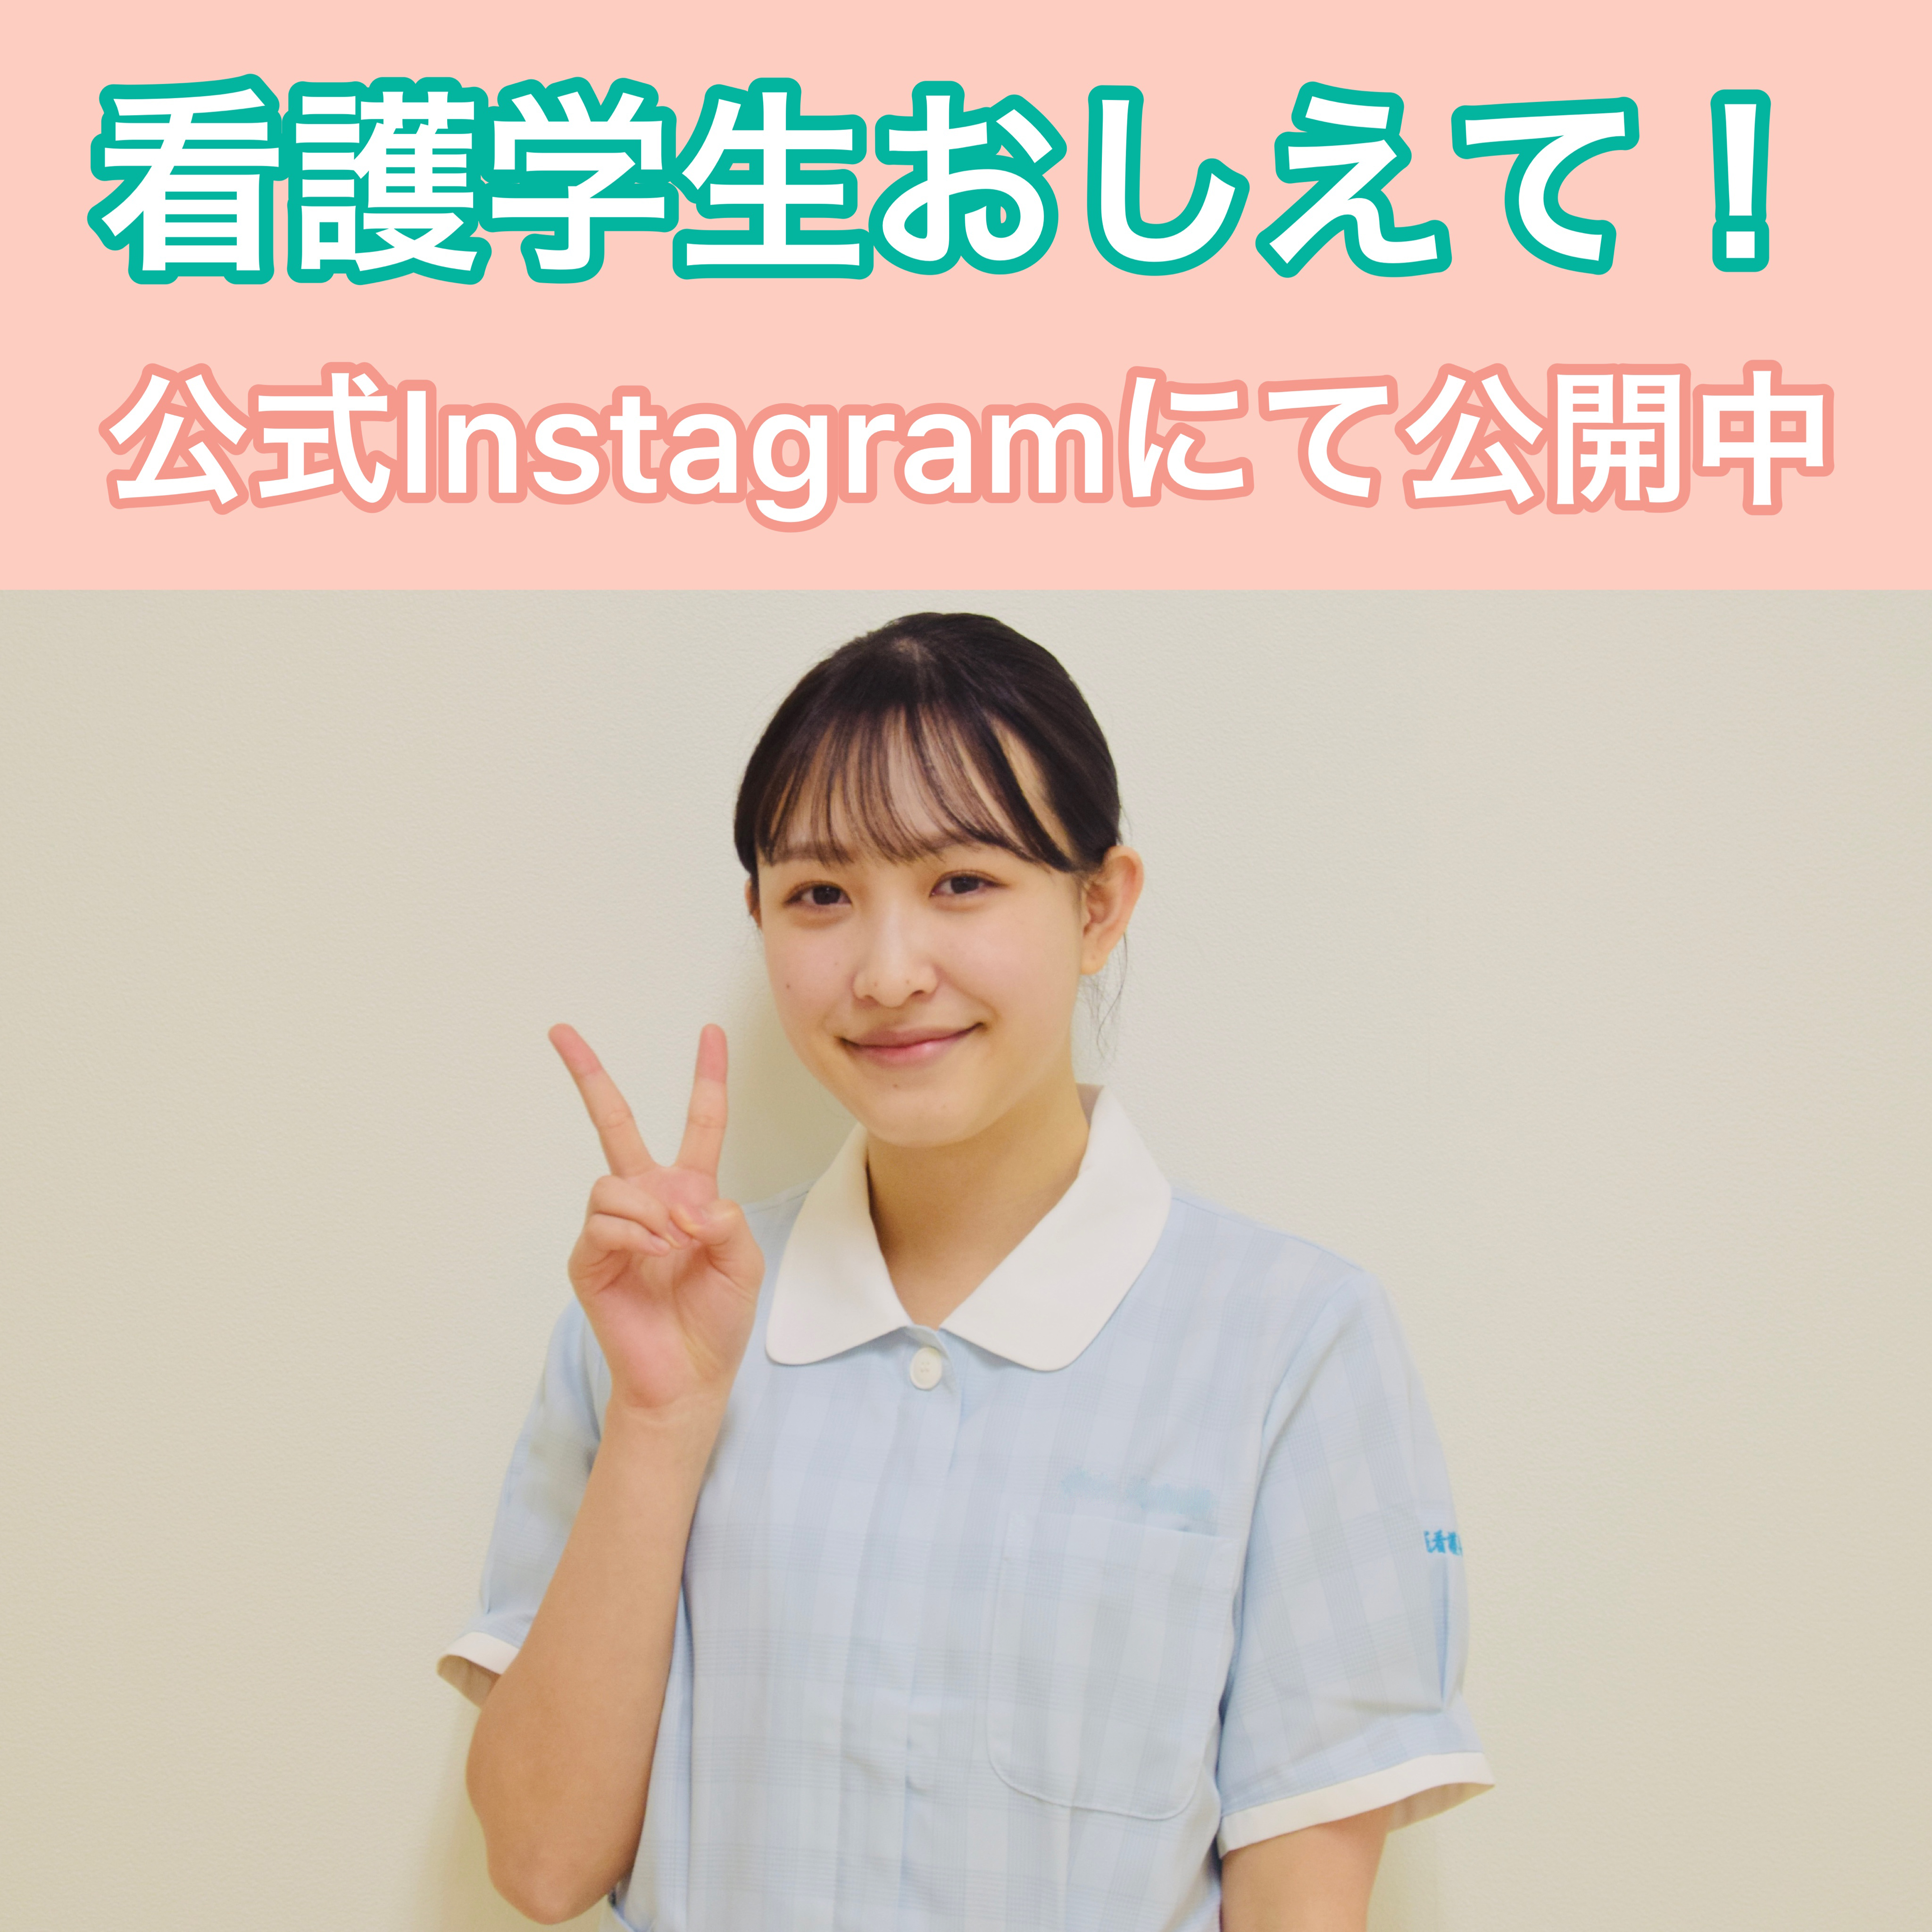 岩崎学園 横浜実践看護専門学校 公式 Yokohama Jkango Twitter